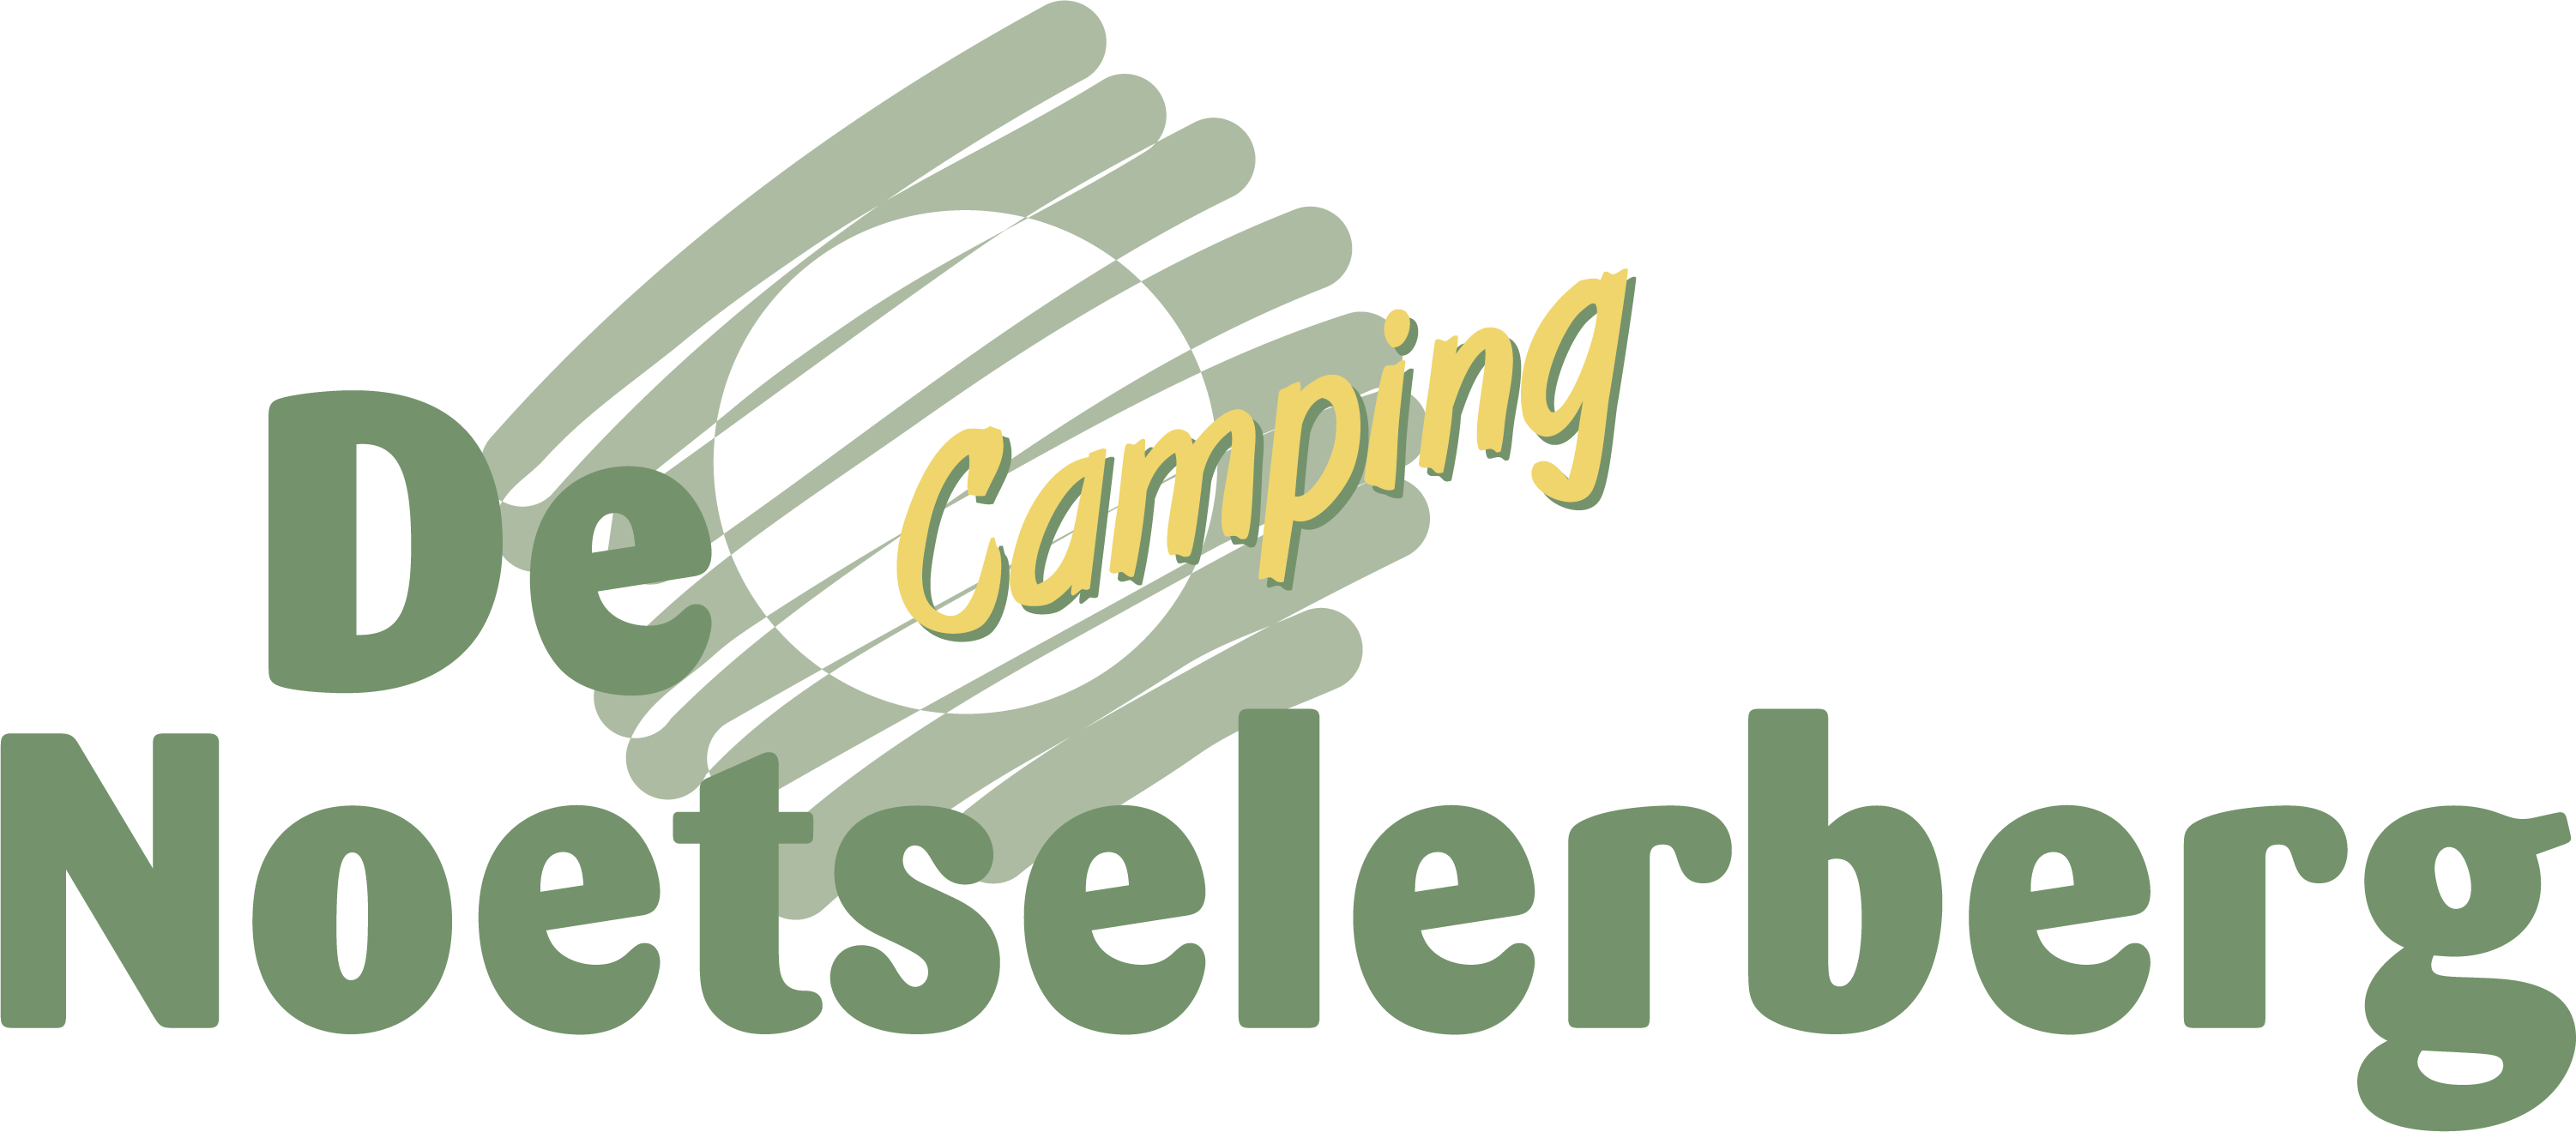 Camping de Noetselerberg